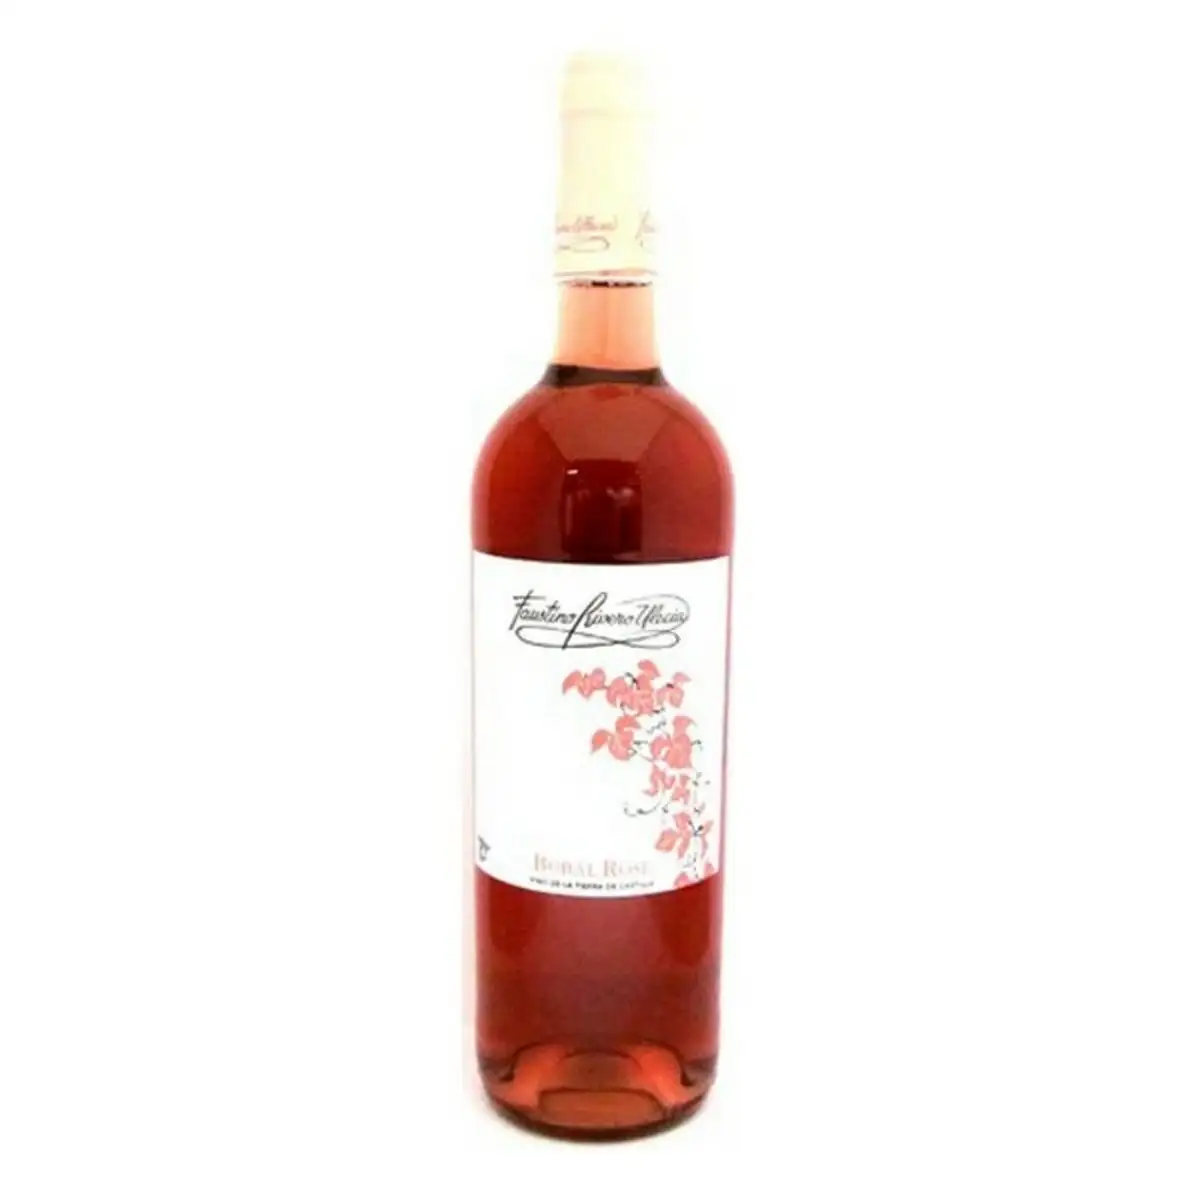 Vin rose faustino rivero bobal rose 75 cl_8771. DIAYTAR SENEGAL - Là où l'Élégance Devient un Mode de Vie. Naviguez à travers notre gamme et choisissez des produits qui apportent une touche raffinée à votre quotidien.